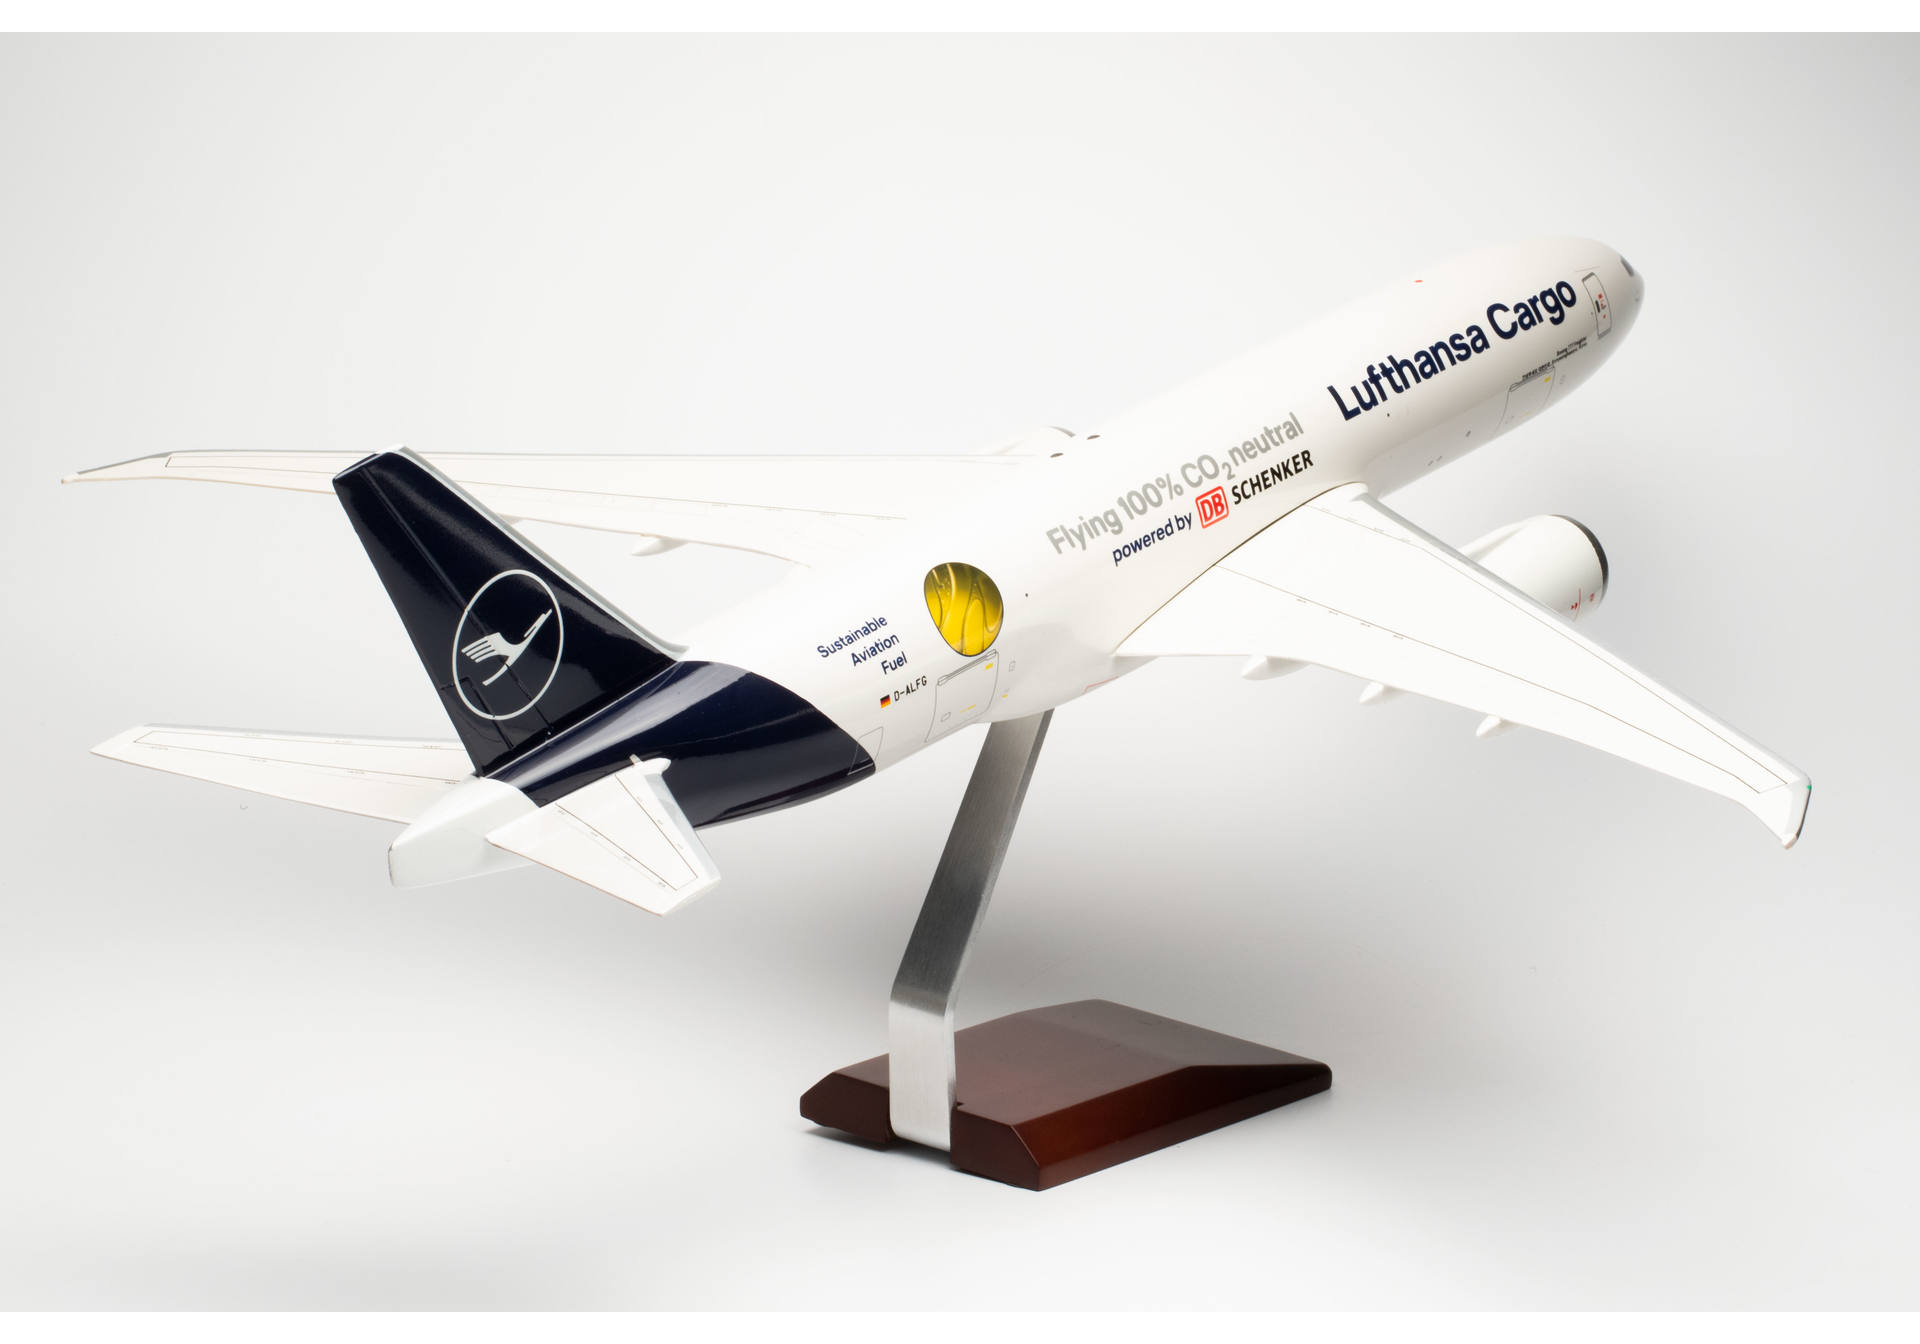 Lufthansa Cargo Boeing 777F “Sustainable Fuel - Powered by DB Schenker”